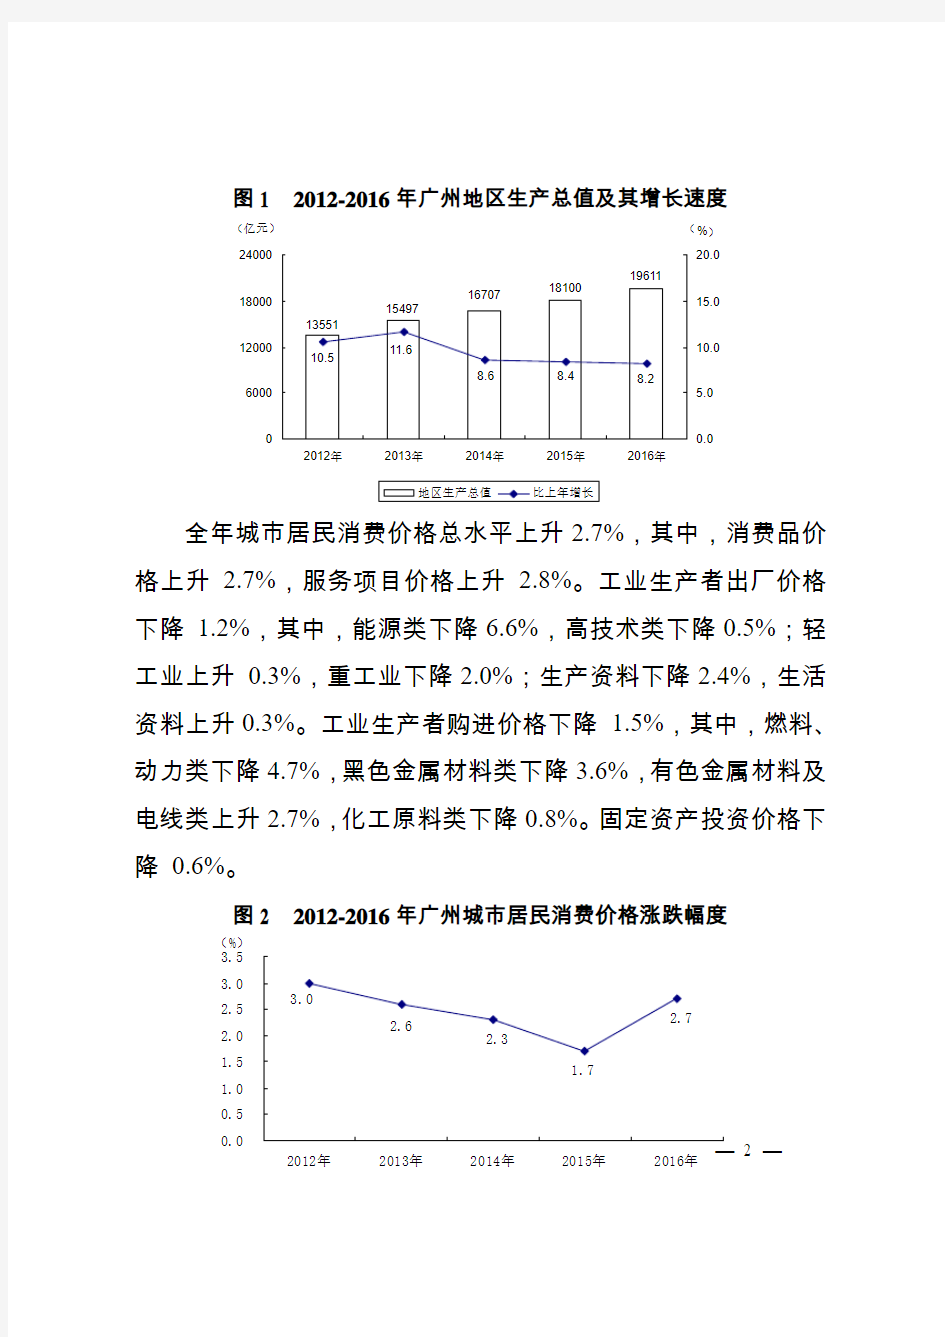 2016年广州国民经济和社会发展统计公报